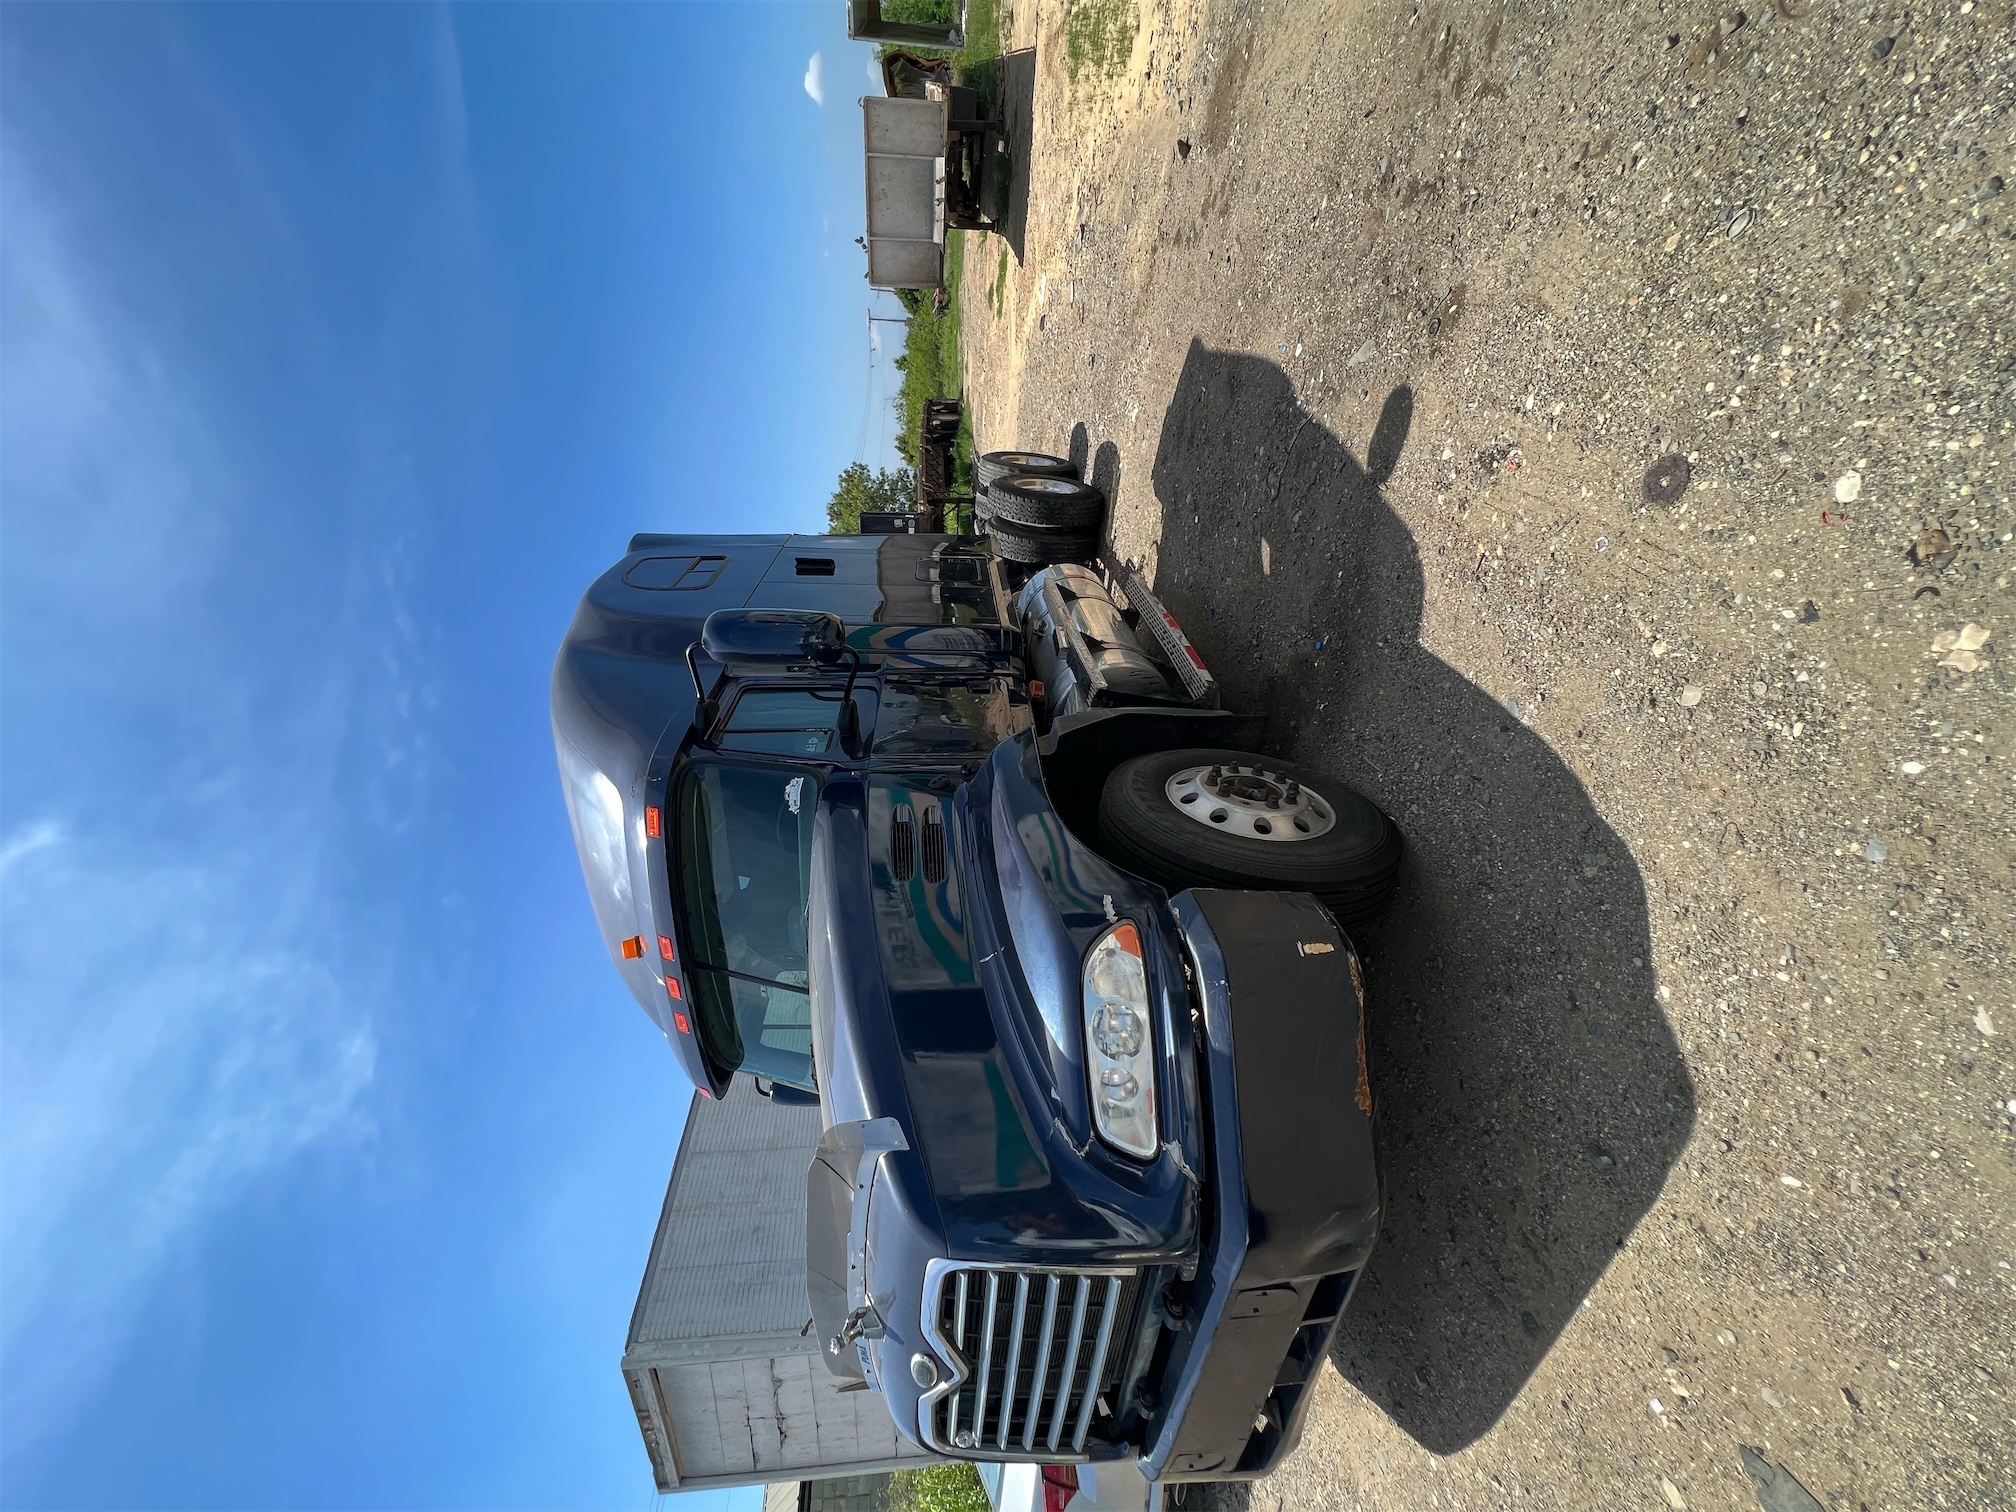 camiones y vehiculos pesados - Camión Mack vision cabezote 2002 de camarote 3